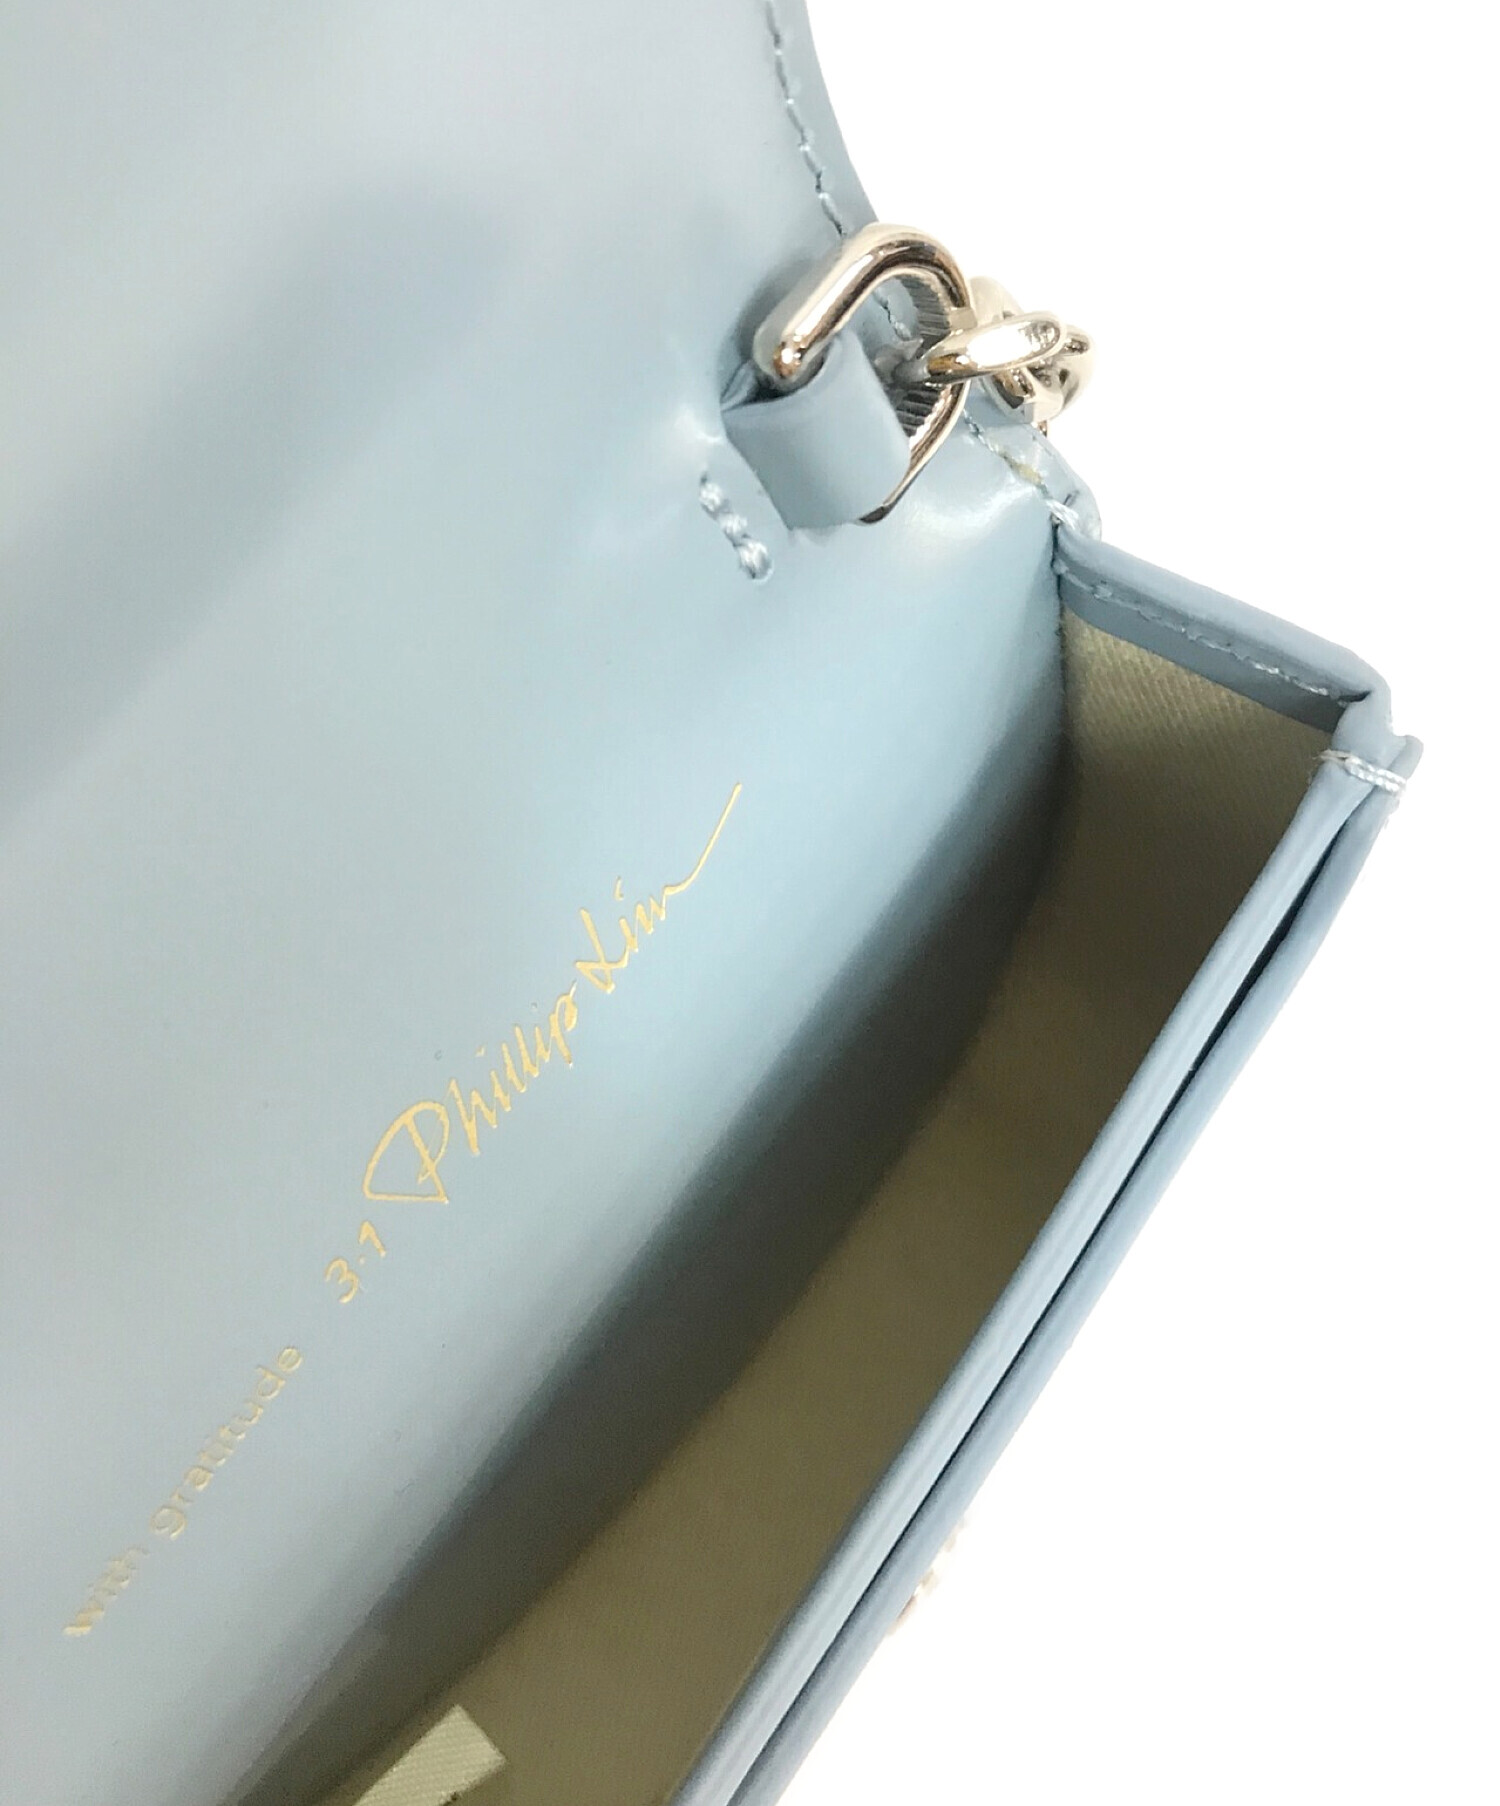 3.1 phillip lim (スリーワンフィリップリム) Mini Alix Cardcase On Chain Bag ブルー サイズ:O/S